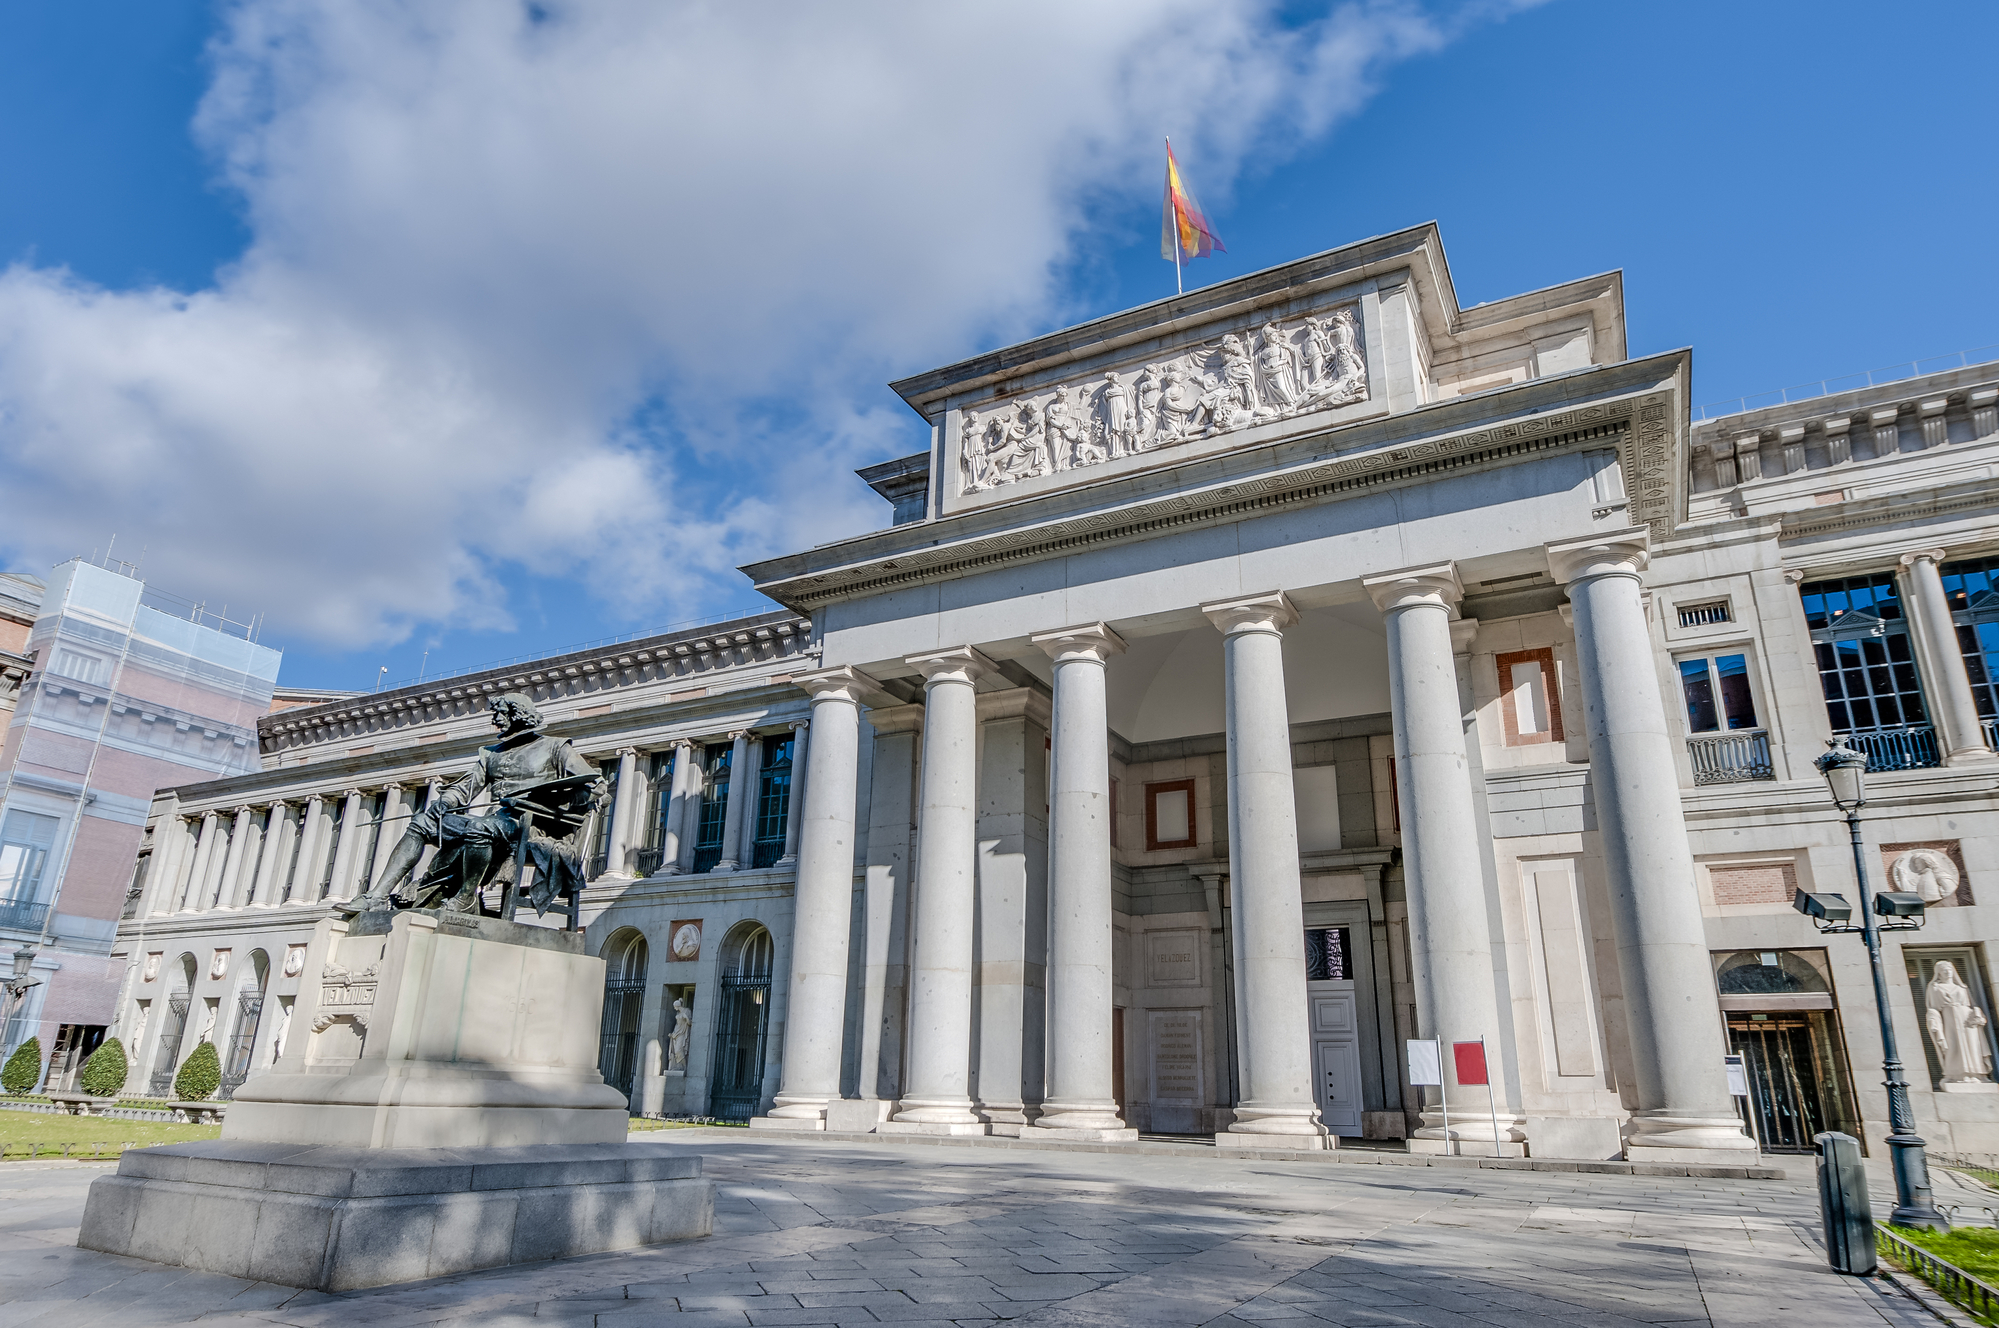 Prado Museum facade and Cervantes statue in Madrid, Spain